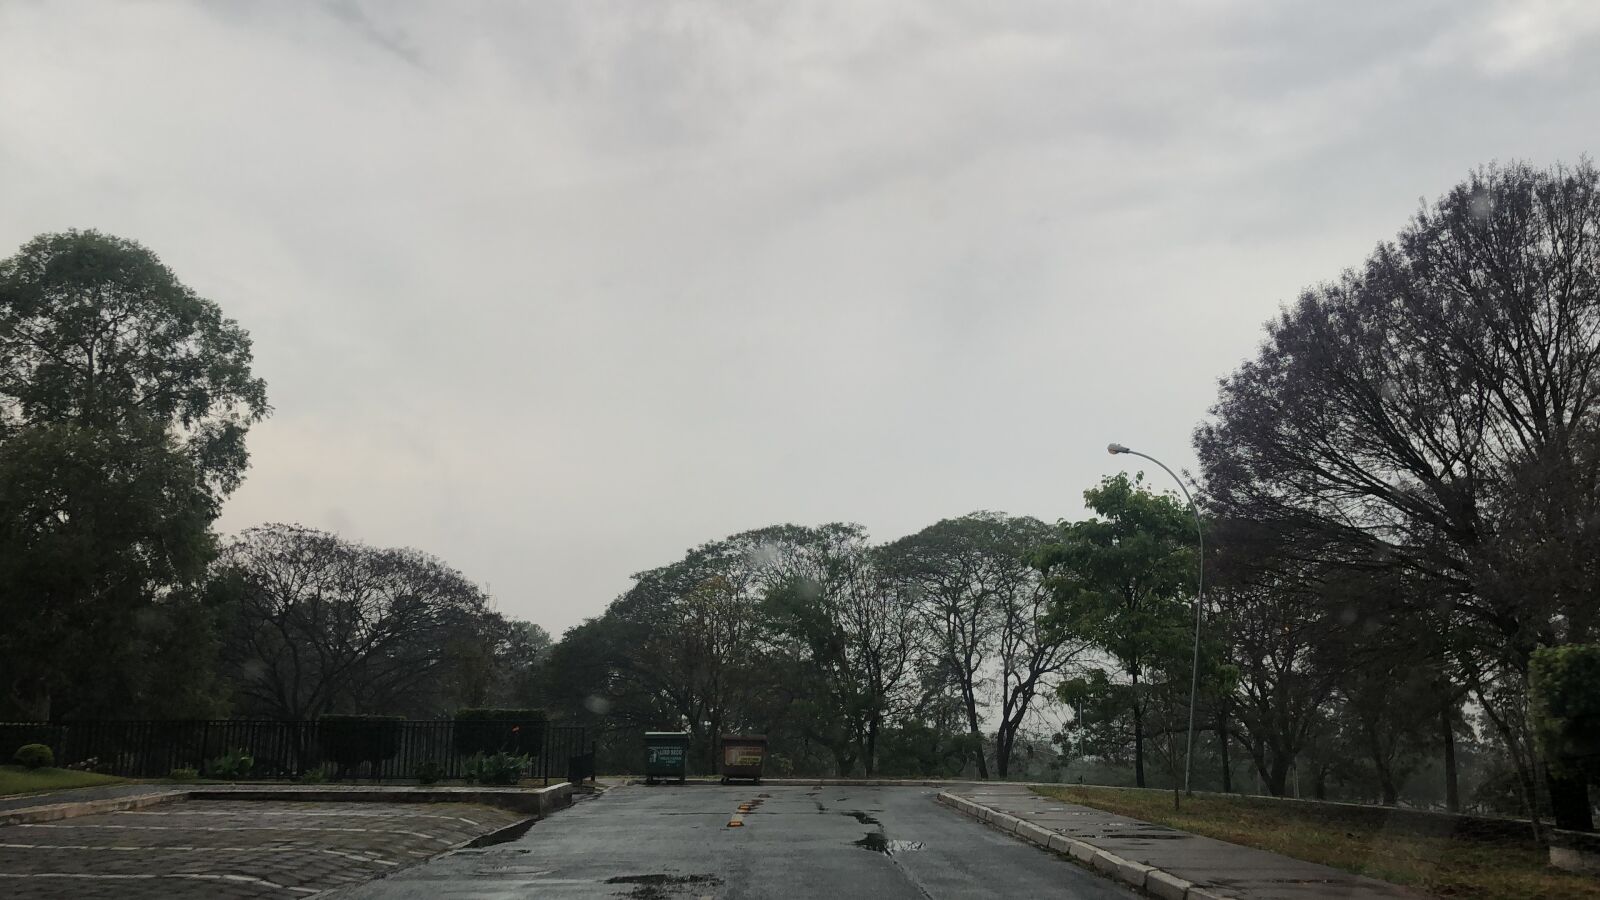 iPhone X back camera 4mm f/1.8 sample photo. Brasilia, rainy weather, trees photography